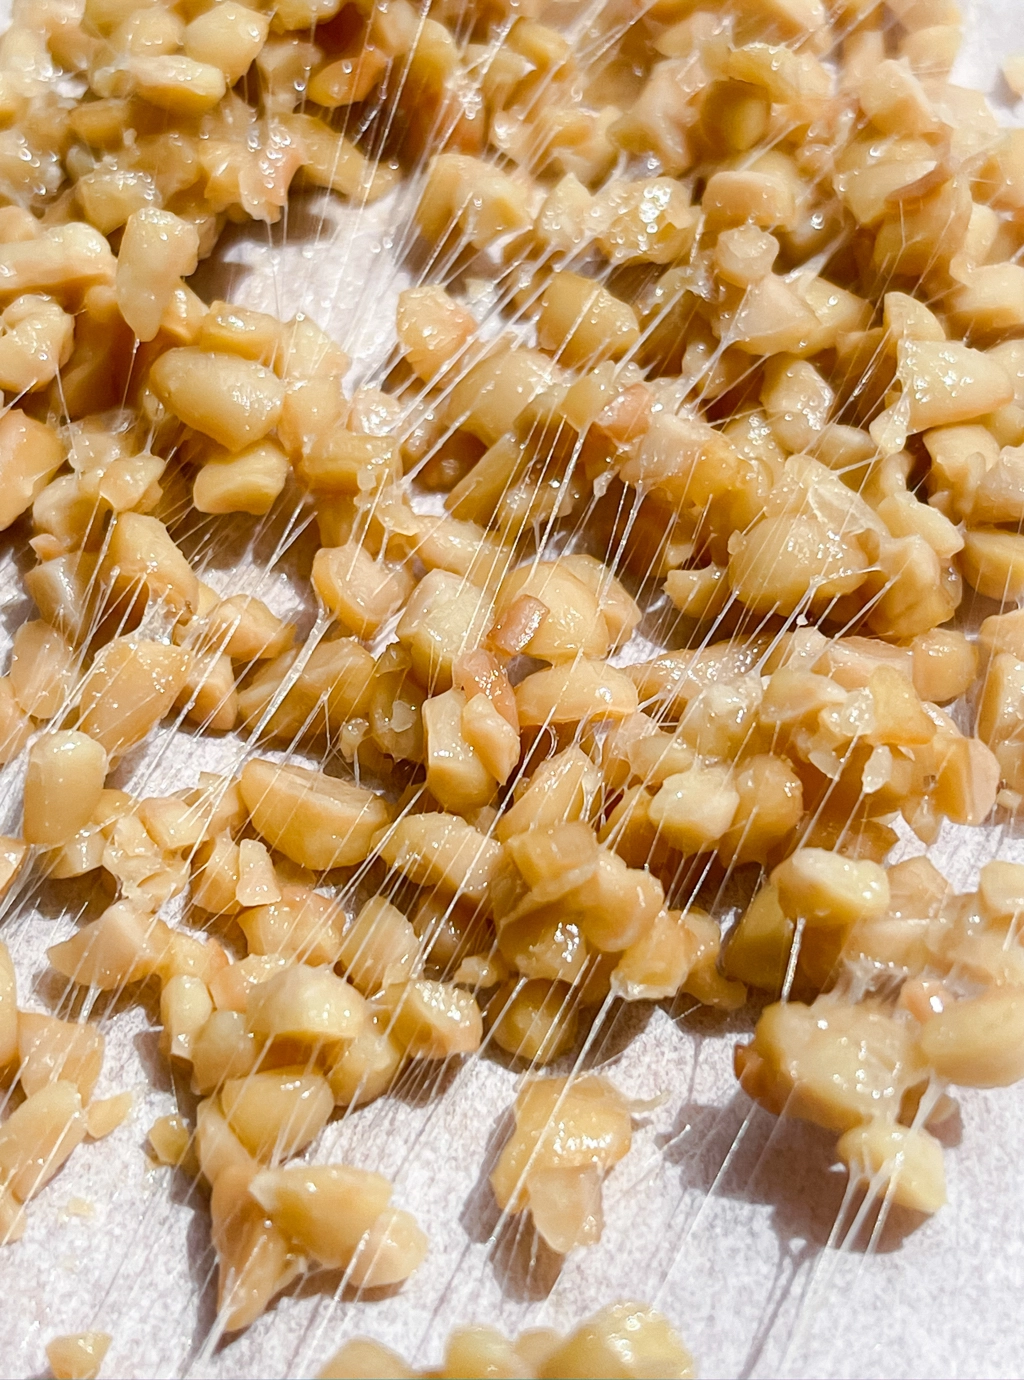 白い背景の上にひきわり納豆を押し伸ばしたような作品。ひきわりなので納豆の粒は細かい。